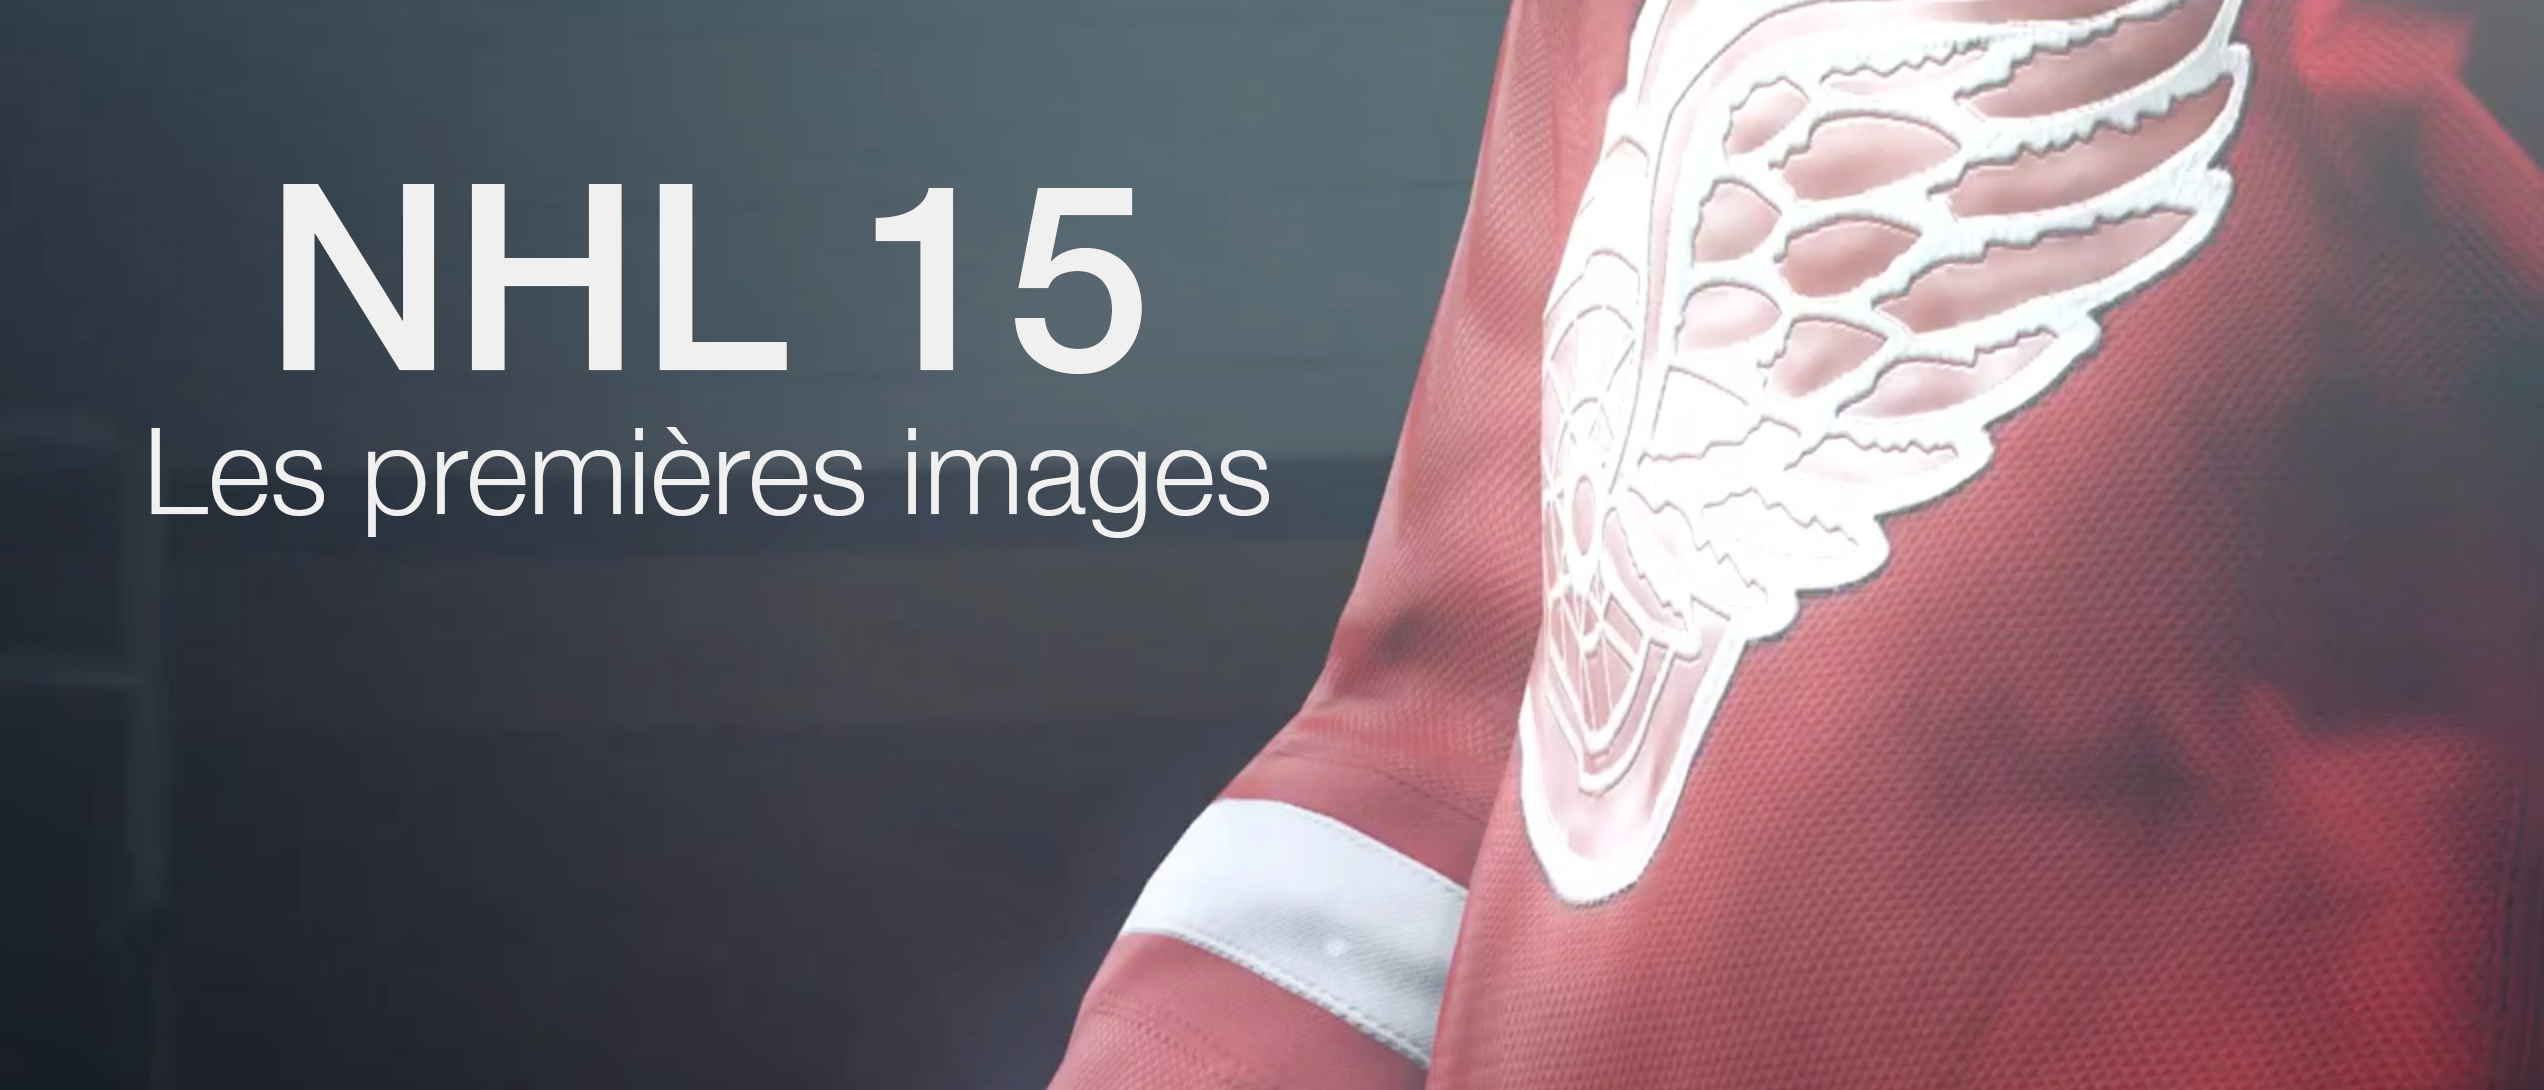 NHL 15 nouveautes